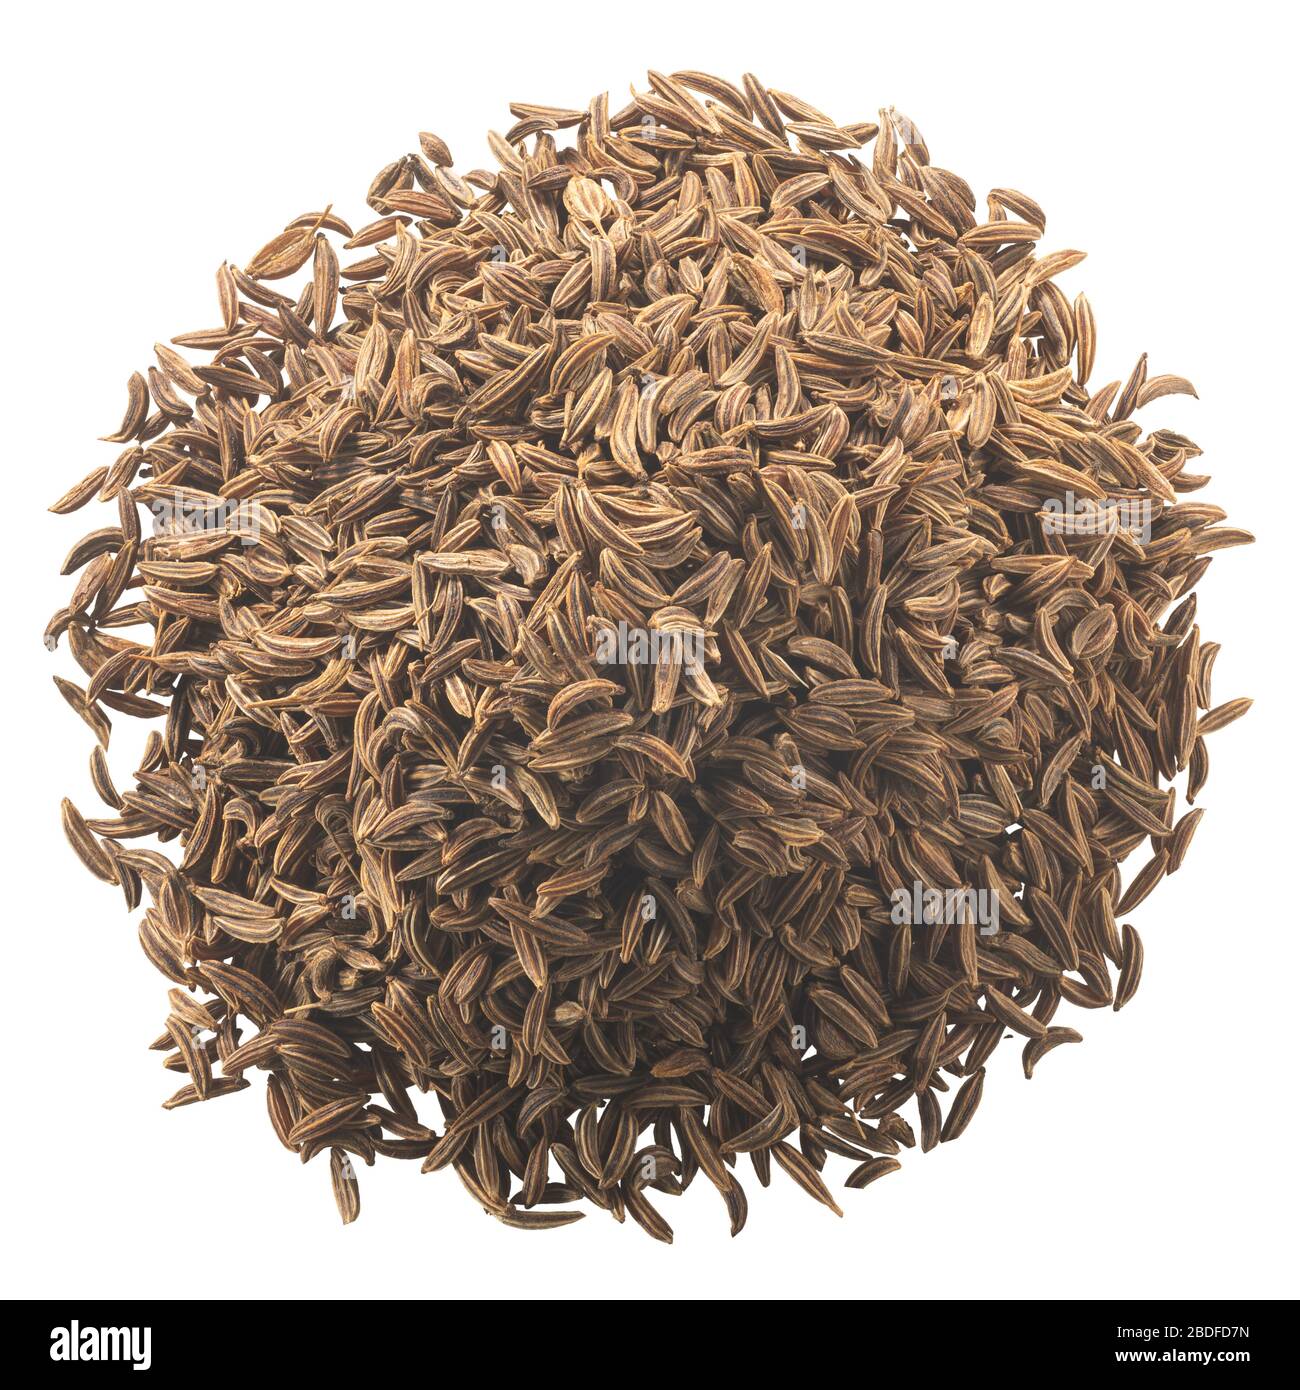 Mucchio di semi di cumino essiccato (carum carvi frutti), isolato, vista dall'alto Foto Stock